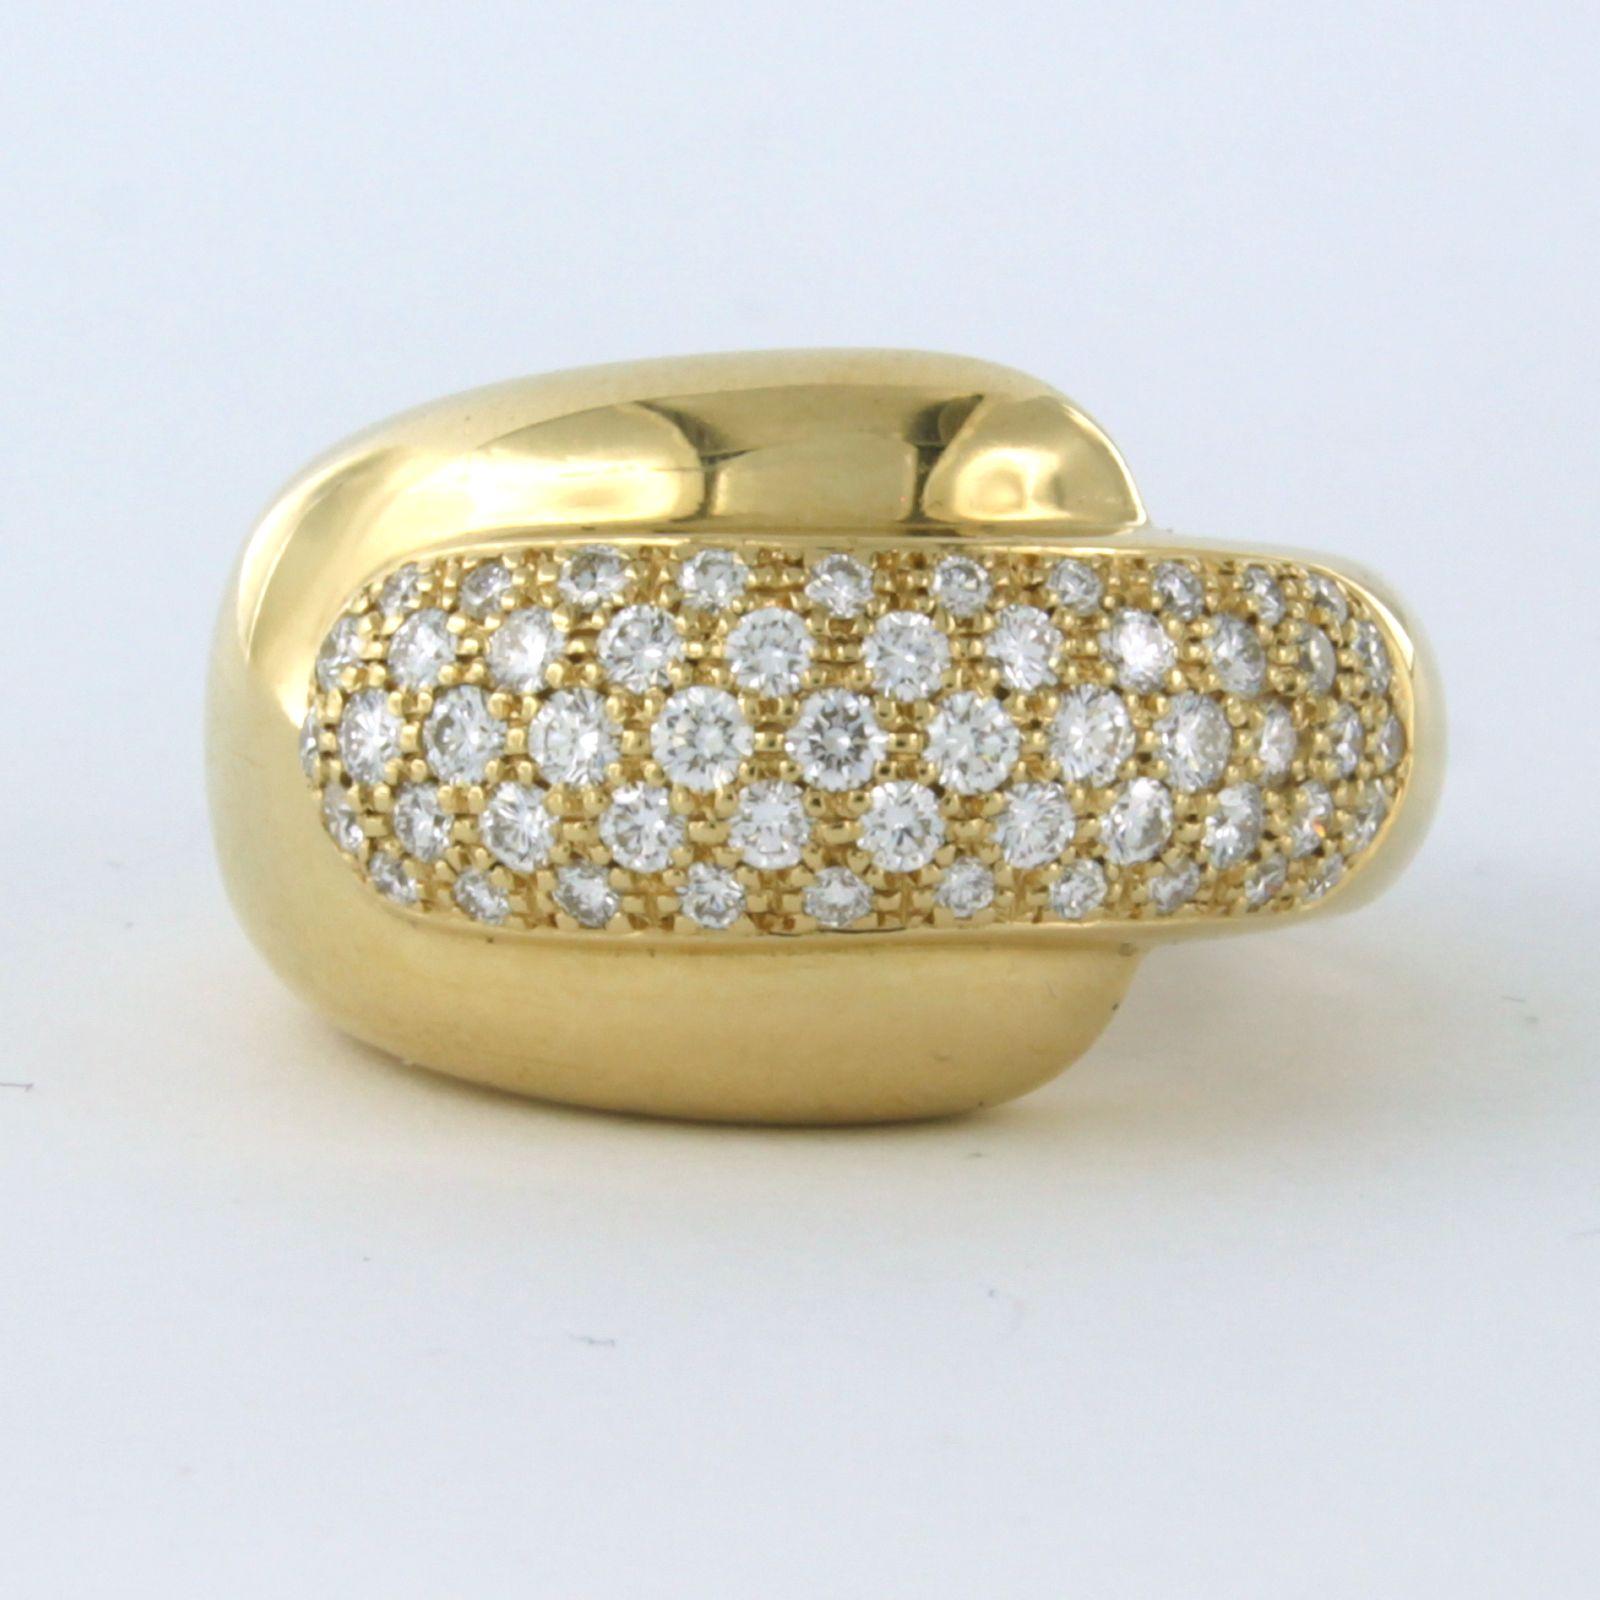 Bague Chaumet Paris en or jaune 18k sertie de diamants taille brillant jusqu'à . 1.70ct - F - VS - taille de bague U.S. 7 - EU 17.25(54)

description détaillée :

le haut de l'anneau a une largeur de 1.5 cm

poids 16.3 grammes

Taille de l'anneau :